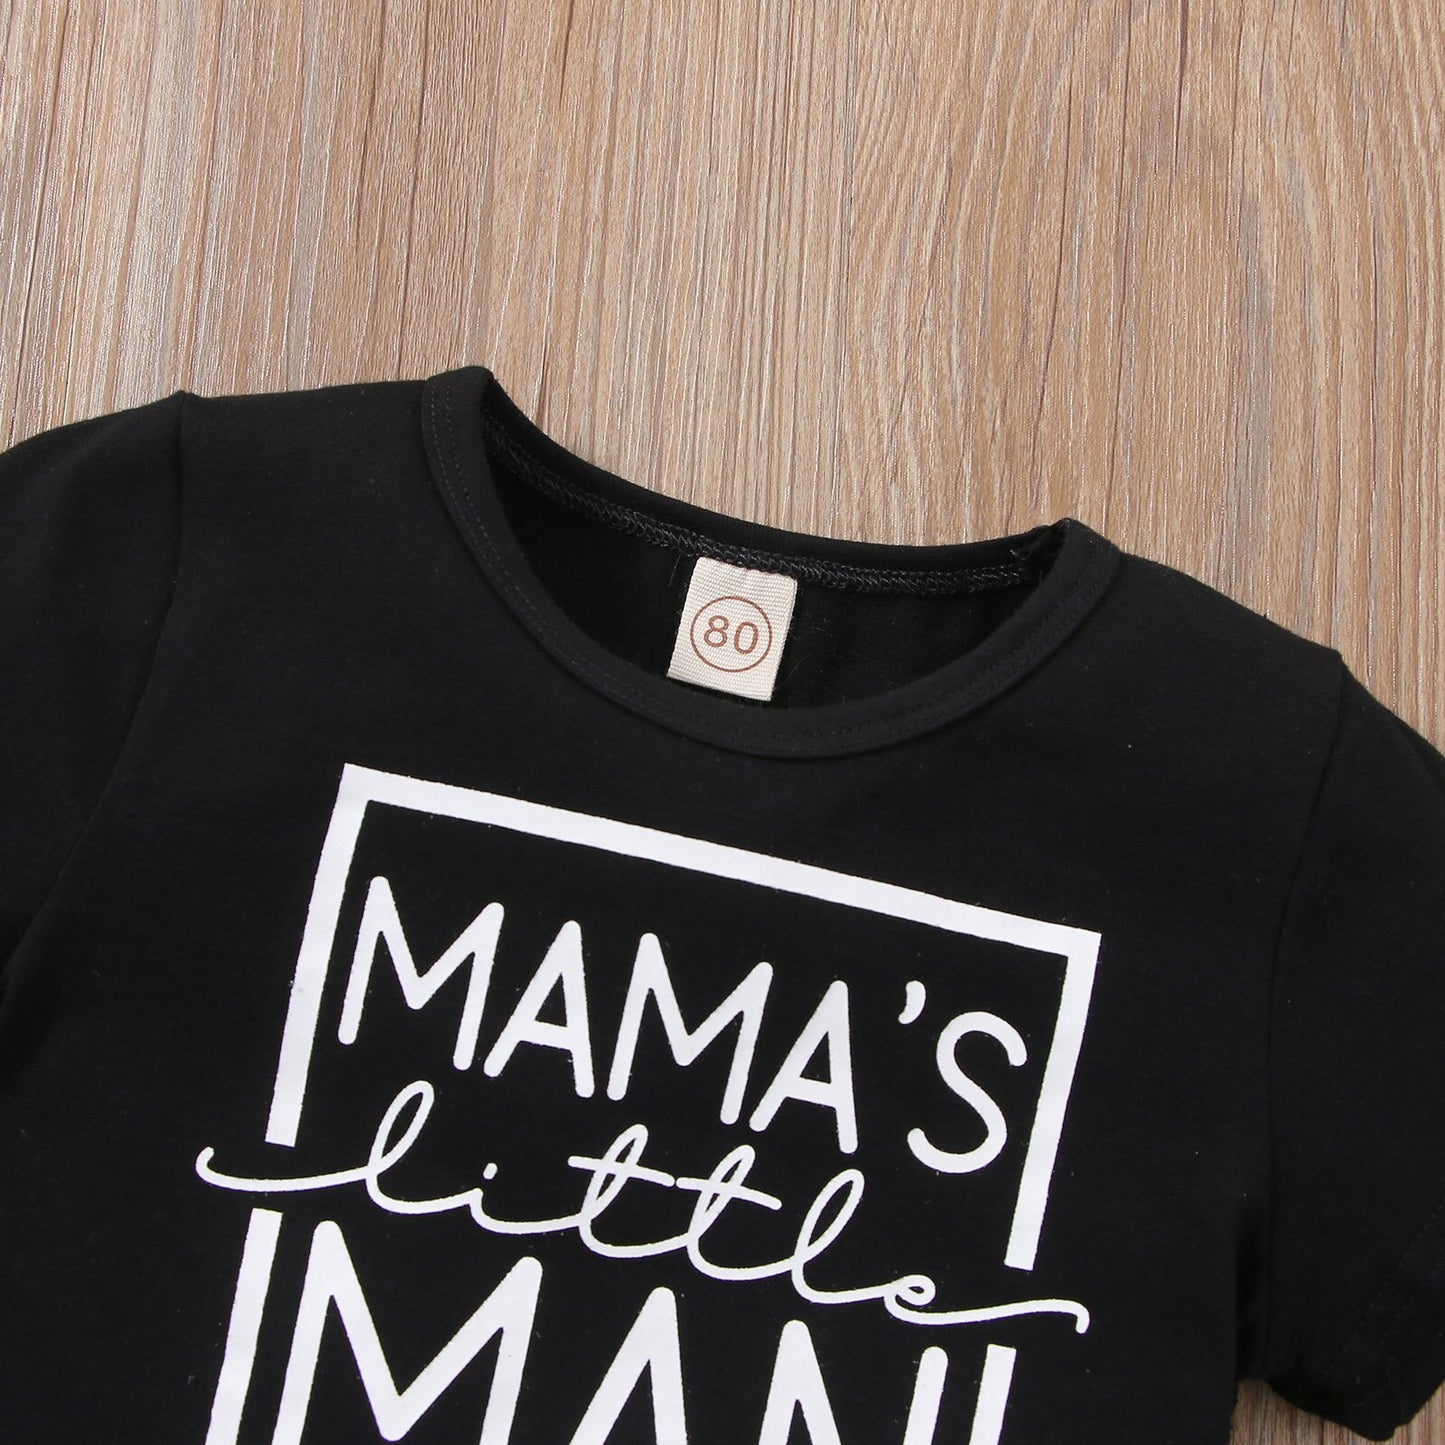 Mama’s Little Man Tee